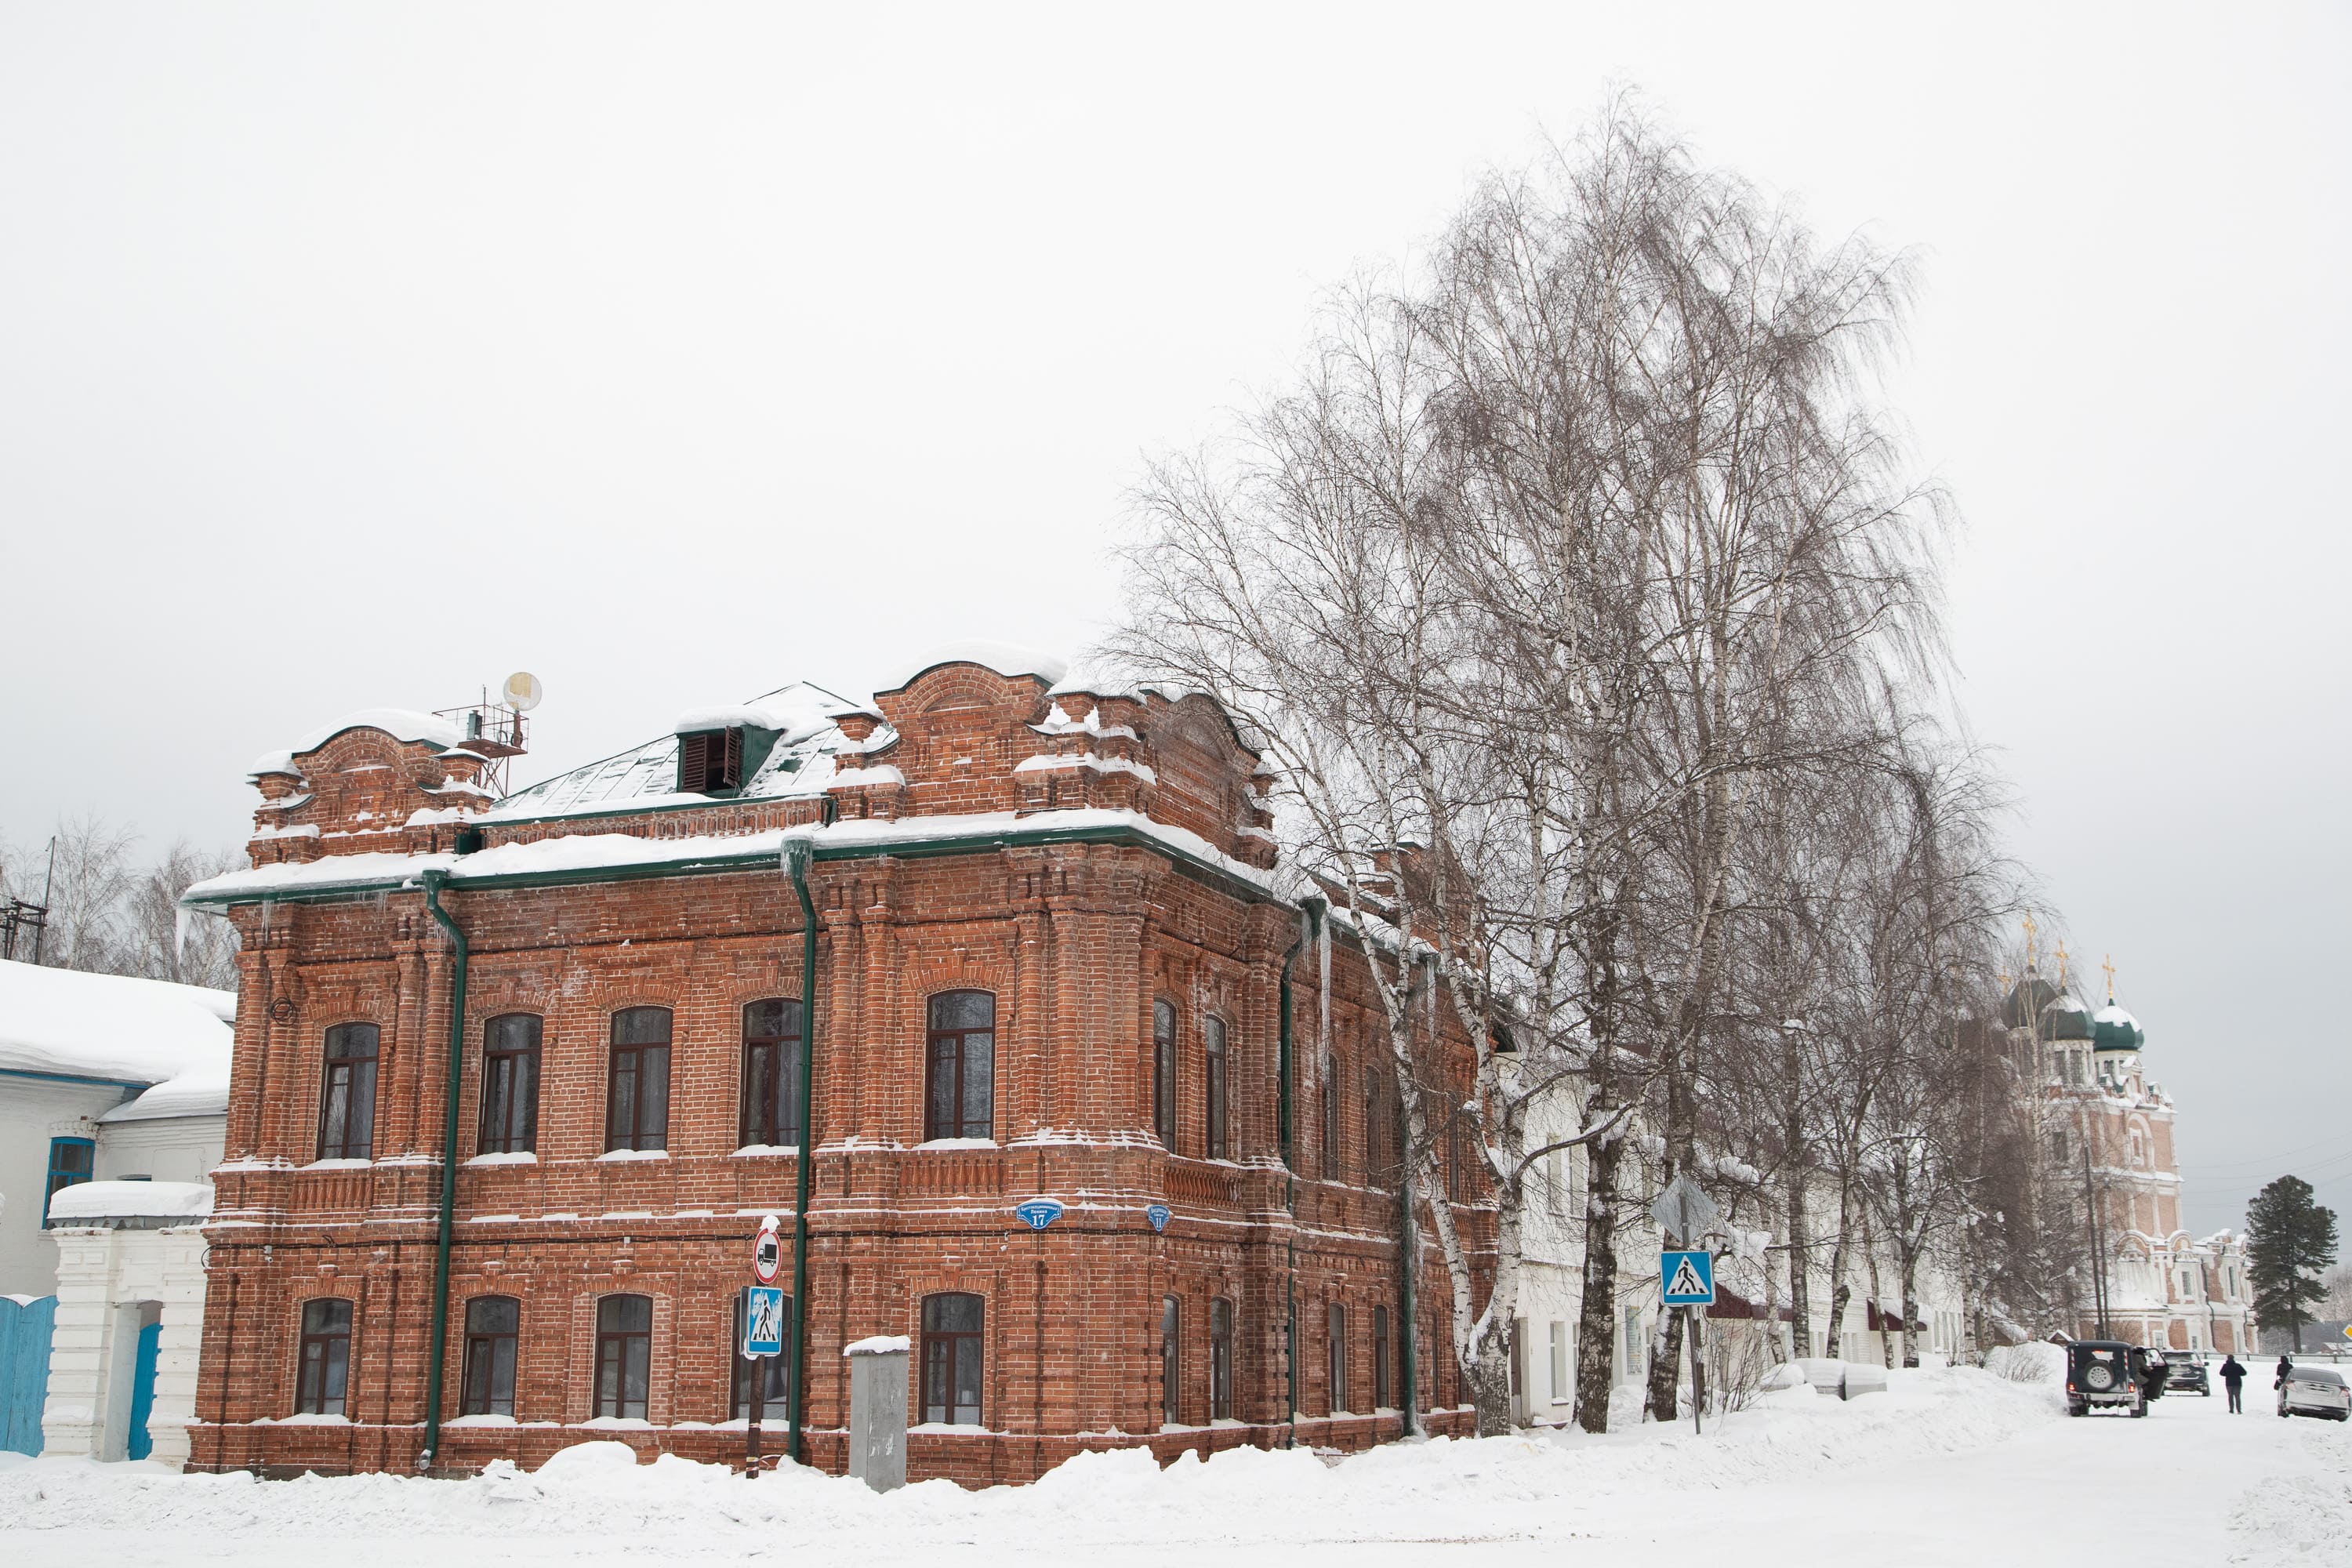 Гостиница «Купеческая» в старинном городе Сольвычегодск отмечает свой первый год работы.